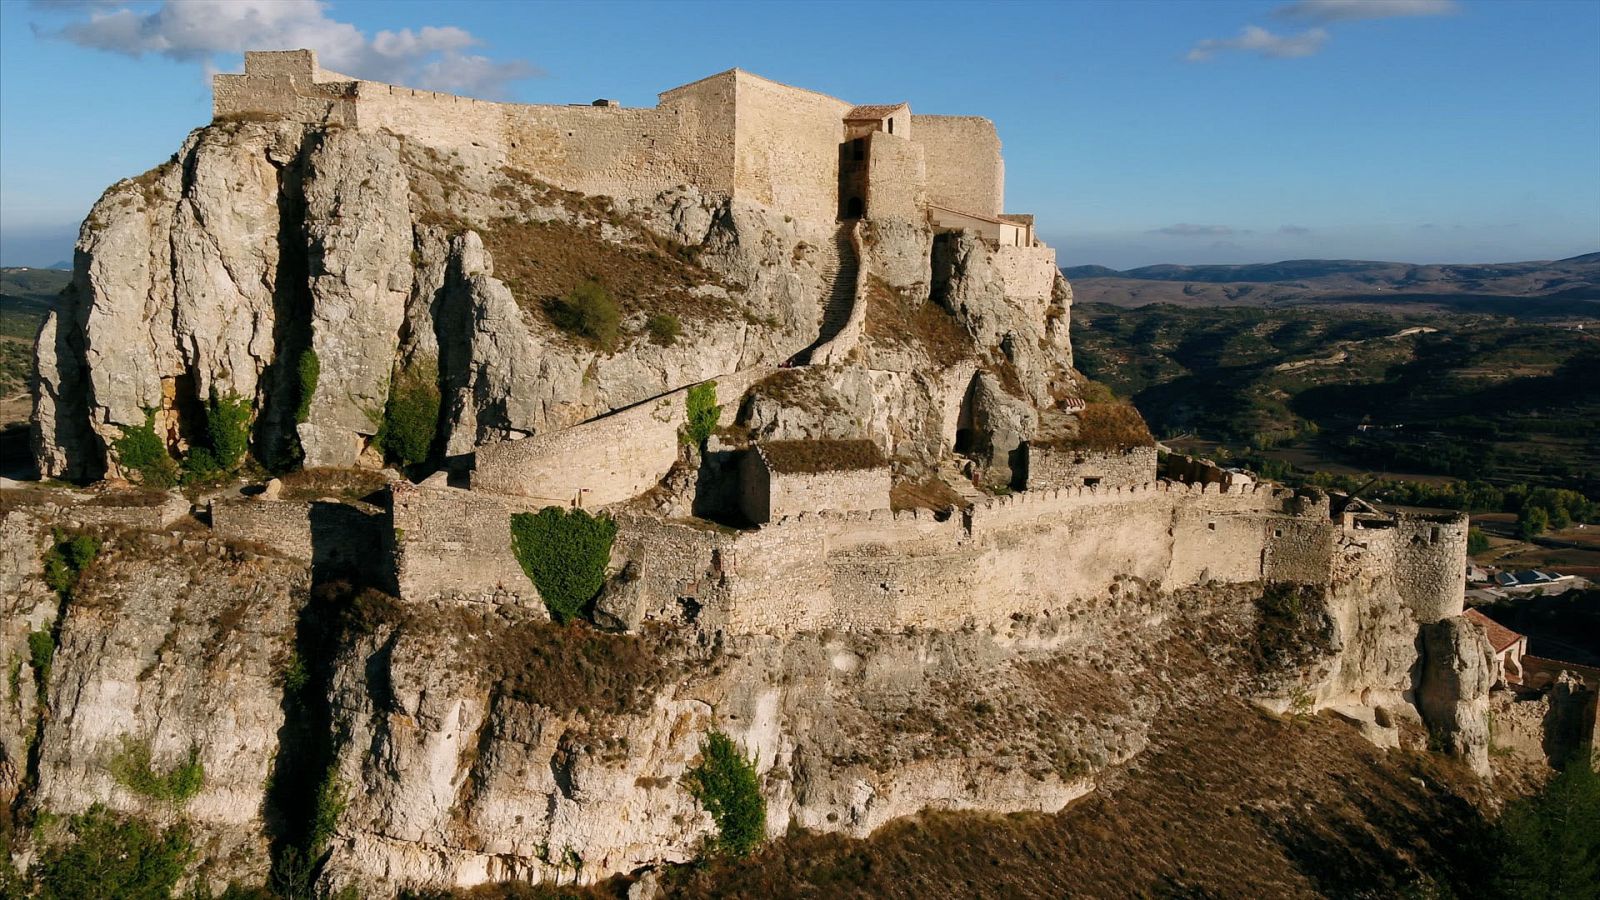 'Las Rutas Capone' comienza su viaje en Morella, una impresionante localidad medieval asentada en uno de los cerros del Maestrazgo